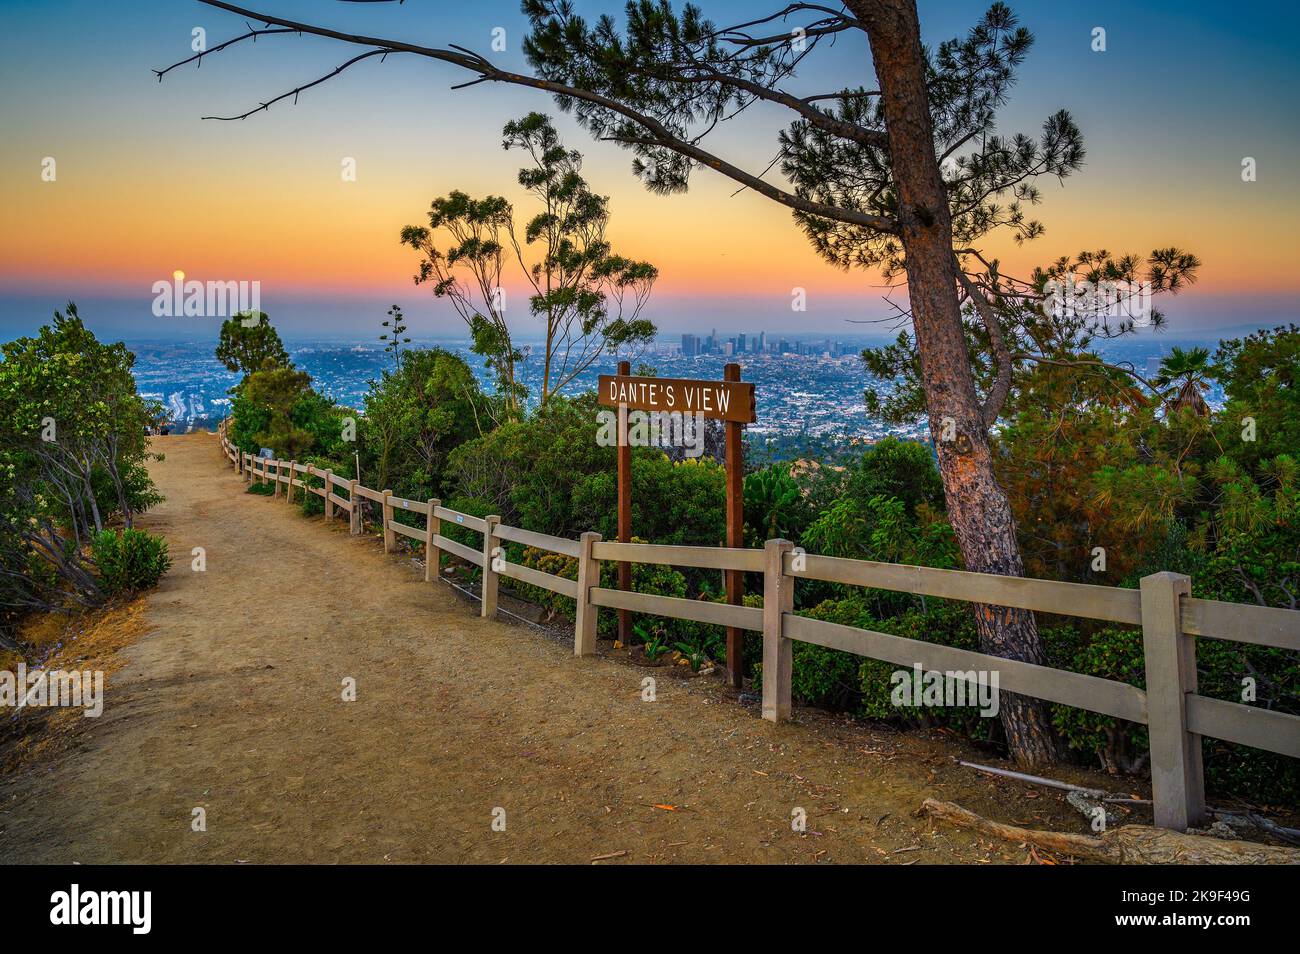 Los Angeles dal punto panoramico Dante's View in California fotografato al tramonto Foto Stock